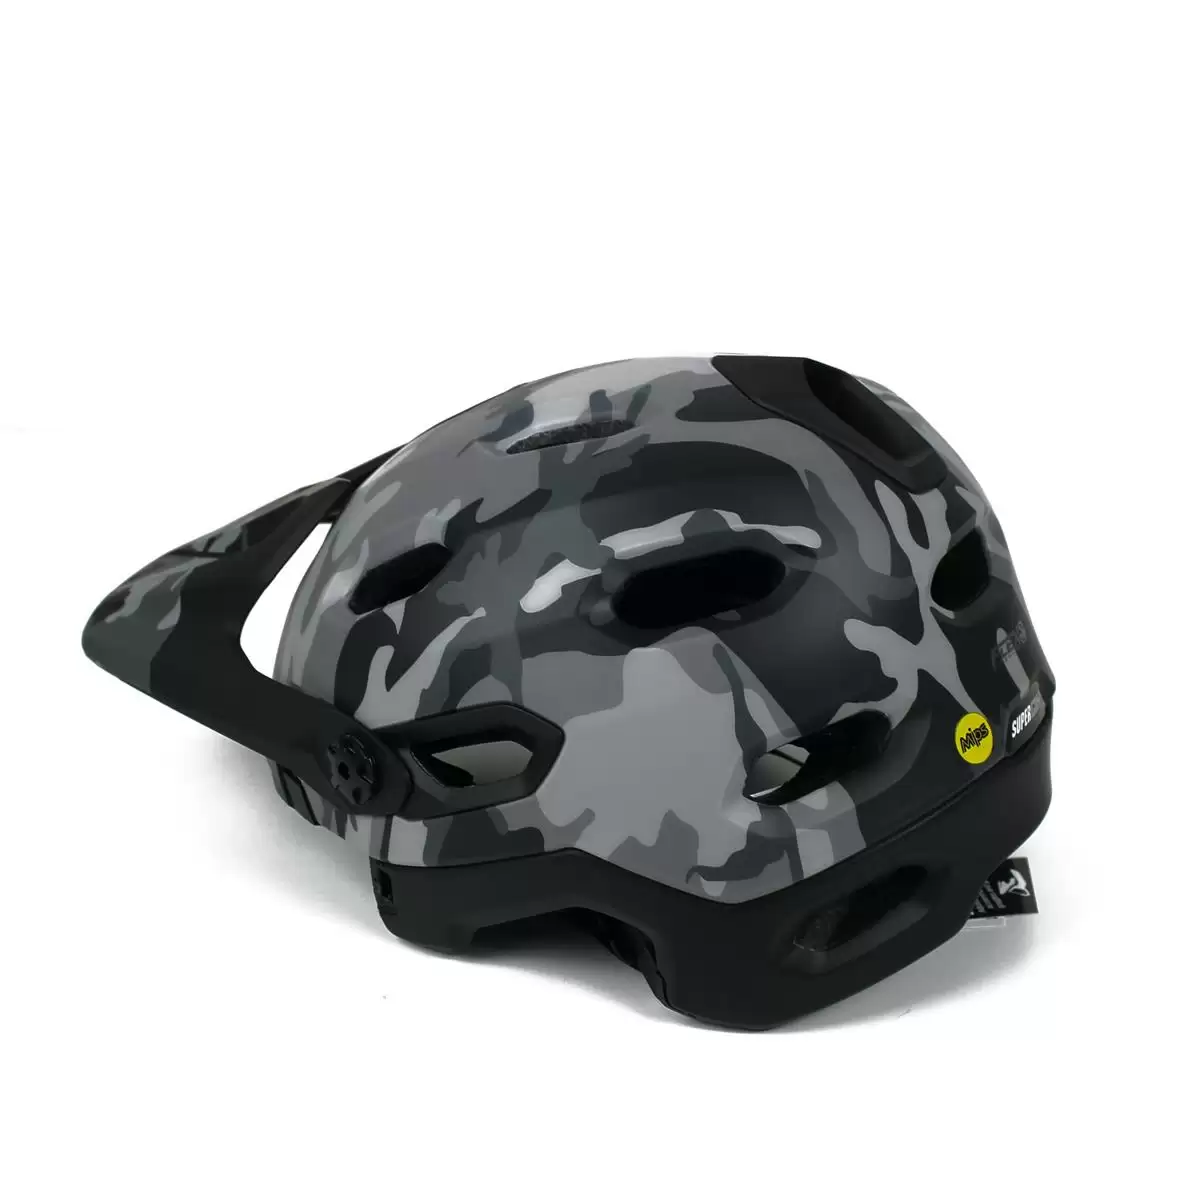 Helmet Super DH MIPS Black Camo Size M (55-59cm) #9